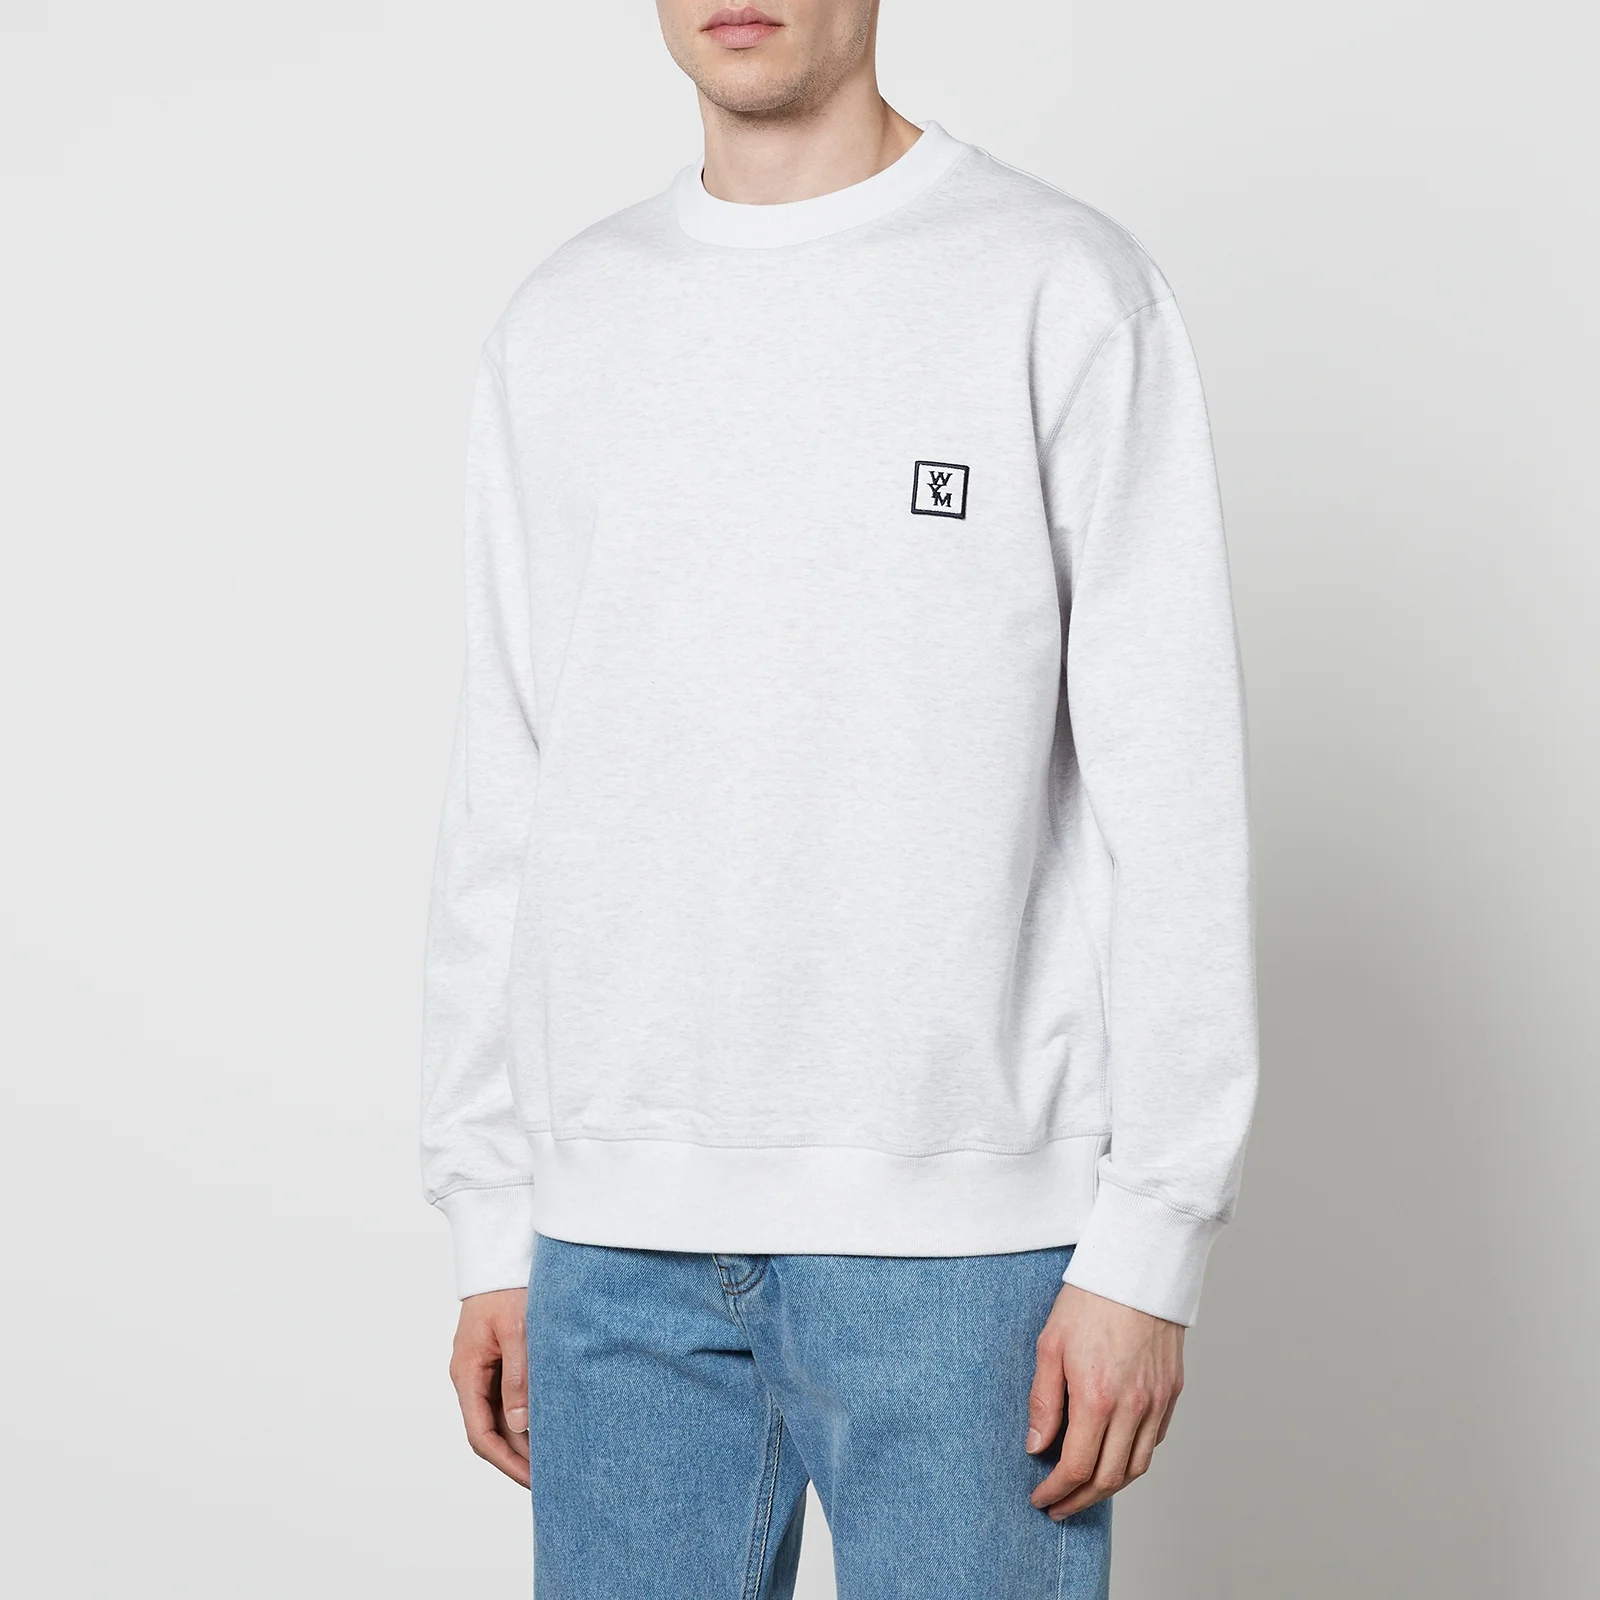 Wooyoungmi Cotton-Jersey Sweatshirt - IT 48/M Image 1